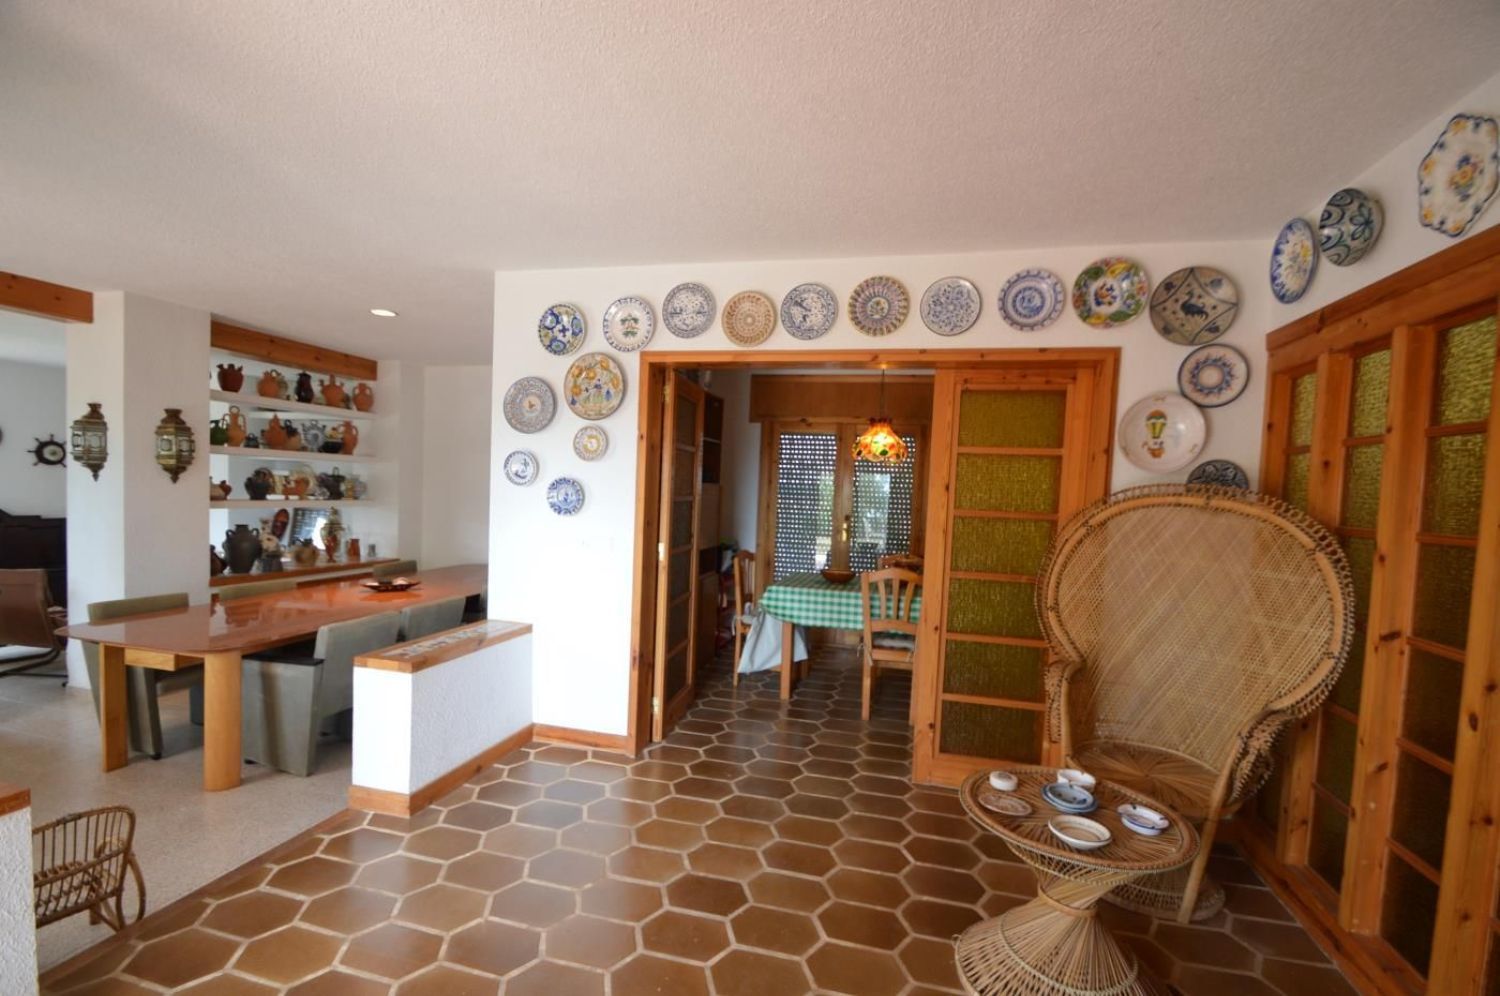 Casa en venta en primera línea de mar en La Foradá, en Vinaròs